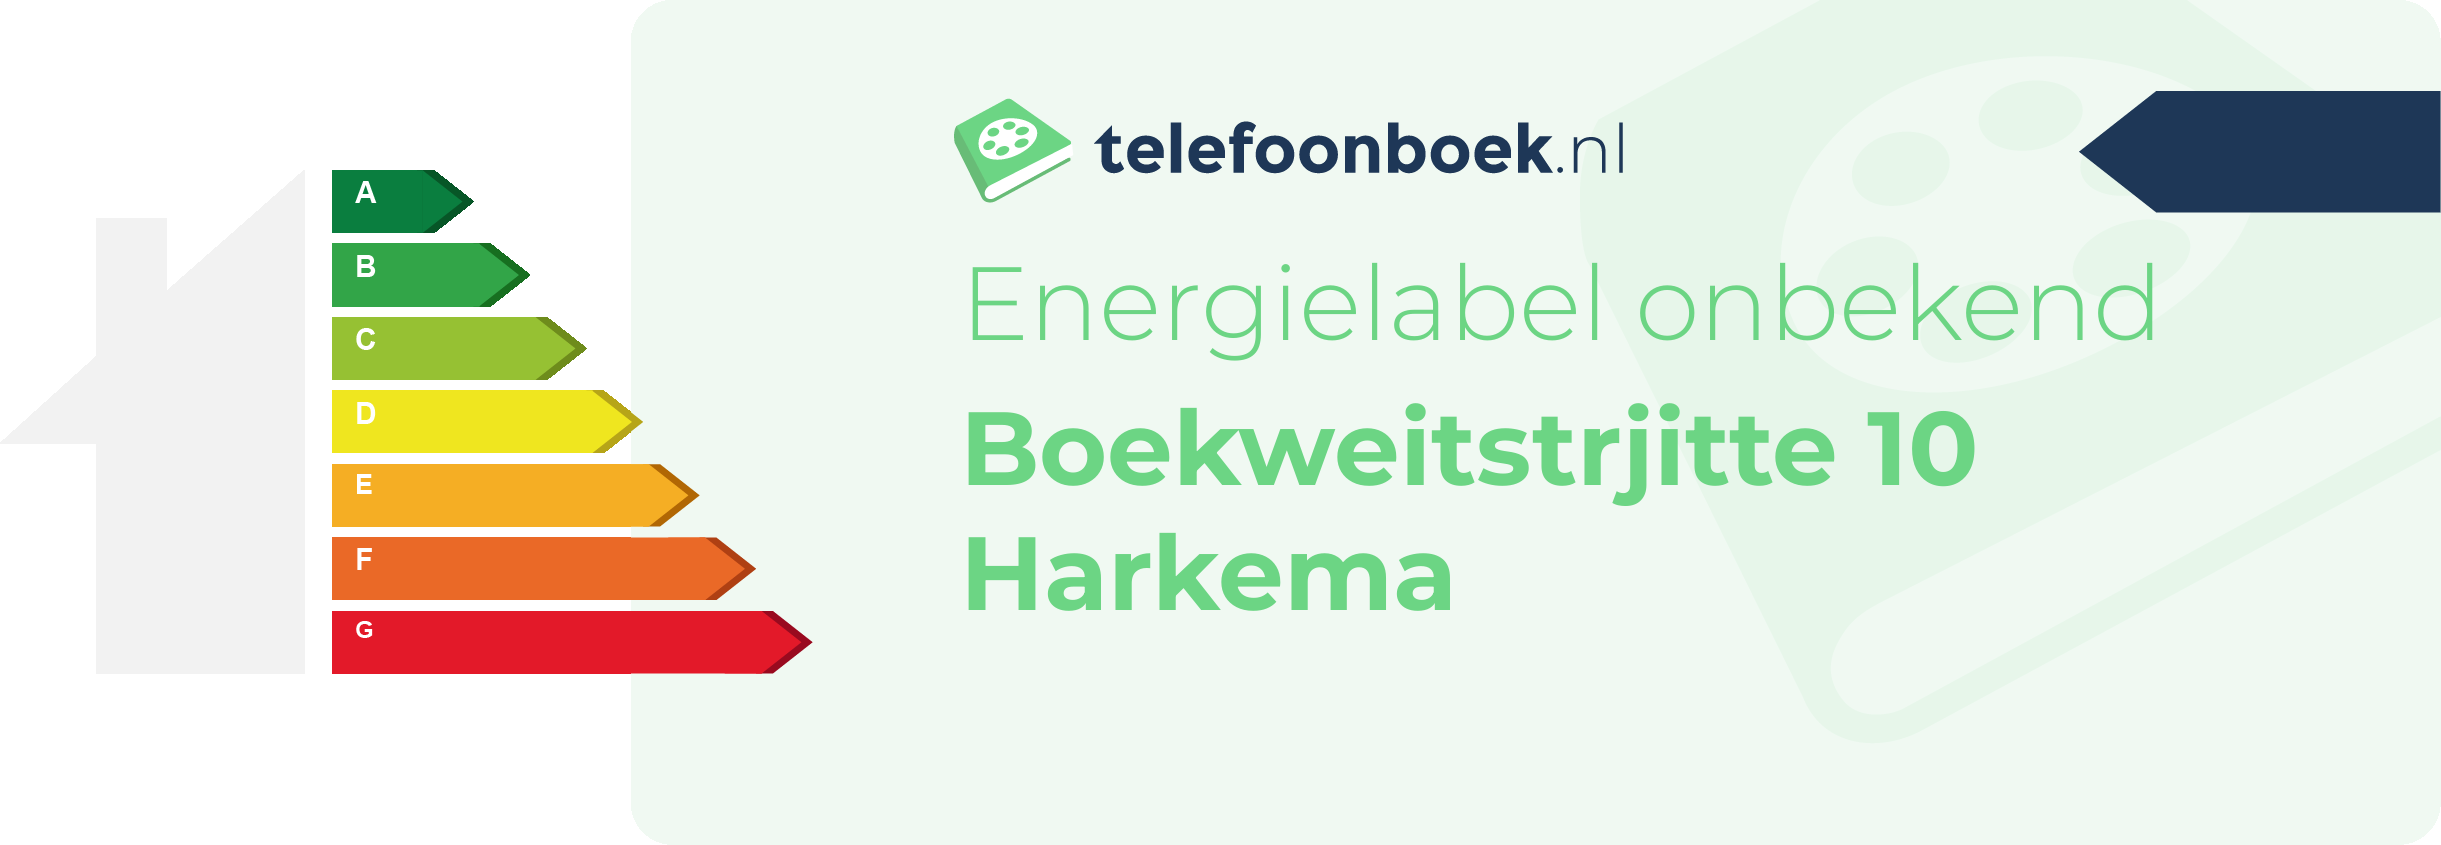 Energielabel Boekweitstrjitte 10 Harkema